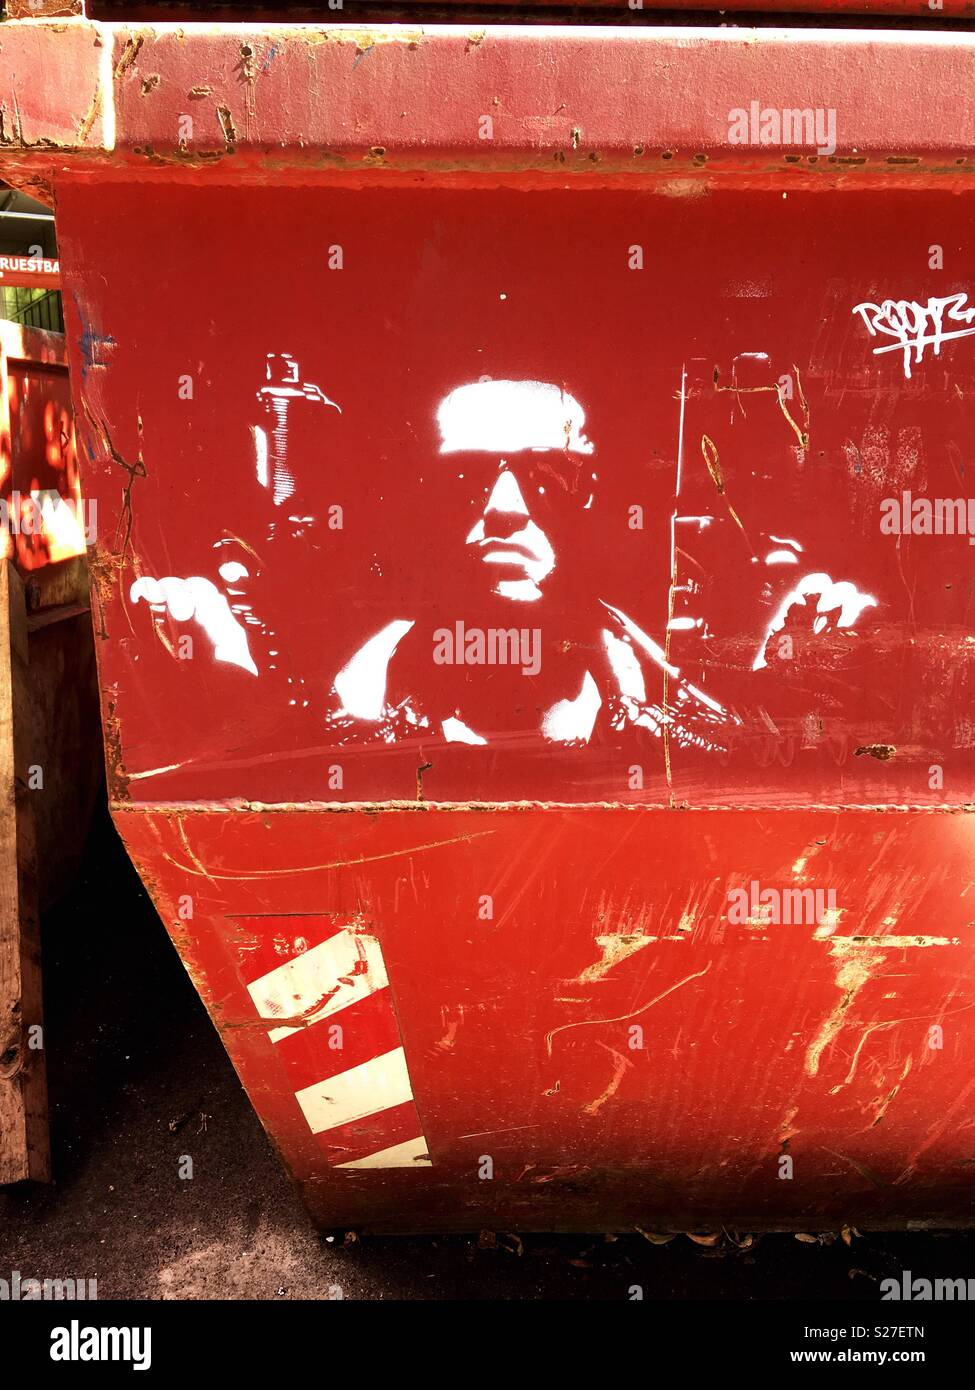 Terminator Schablone Graffiti auf einer roten Metalloberfläche Stockfoto